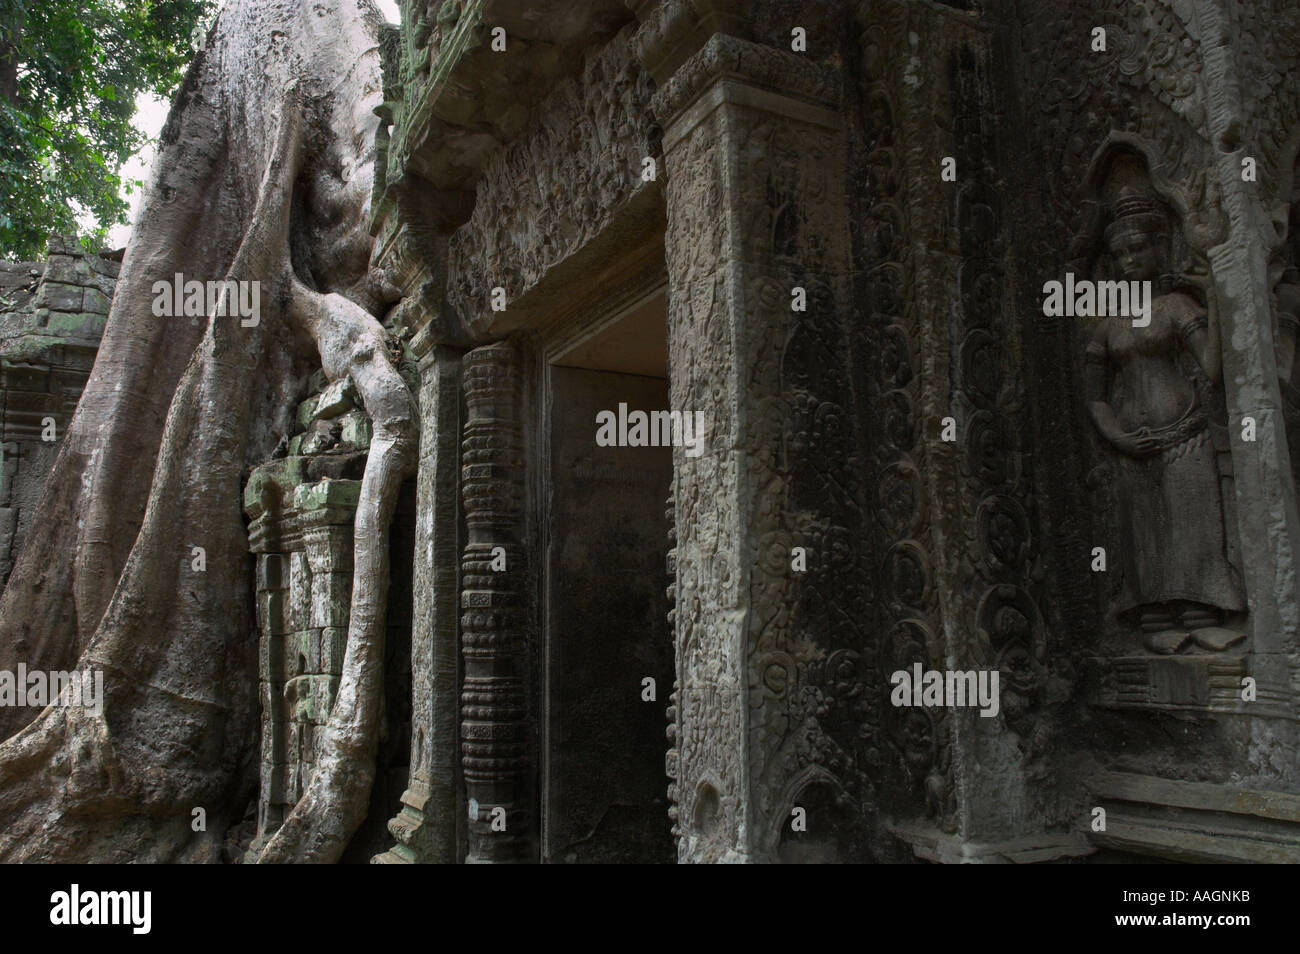 Kambodscha Siem Reap Provinz Tempeln von Angkor Archäologische Park Steintor Ta Prohm Tempel und Statuen, die mit riesigen Baum ich Figur Stockfoto